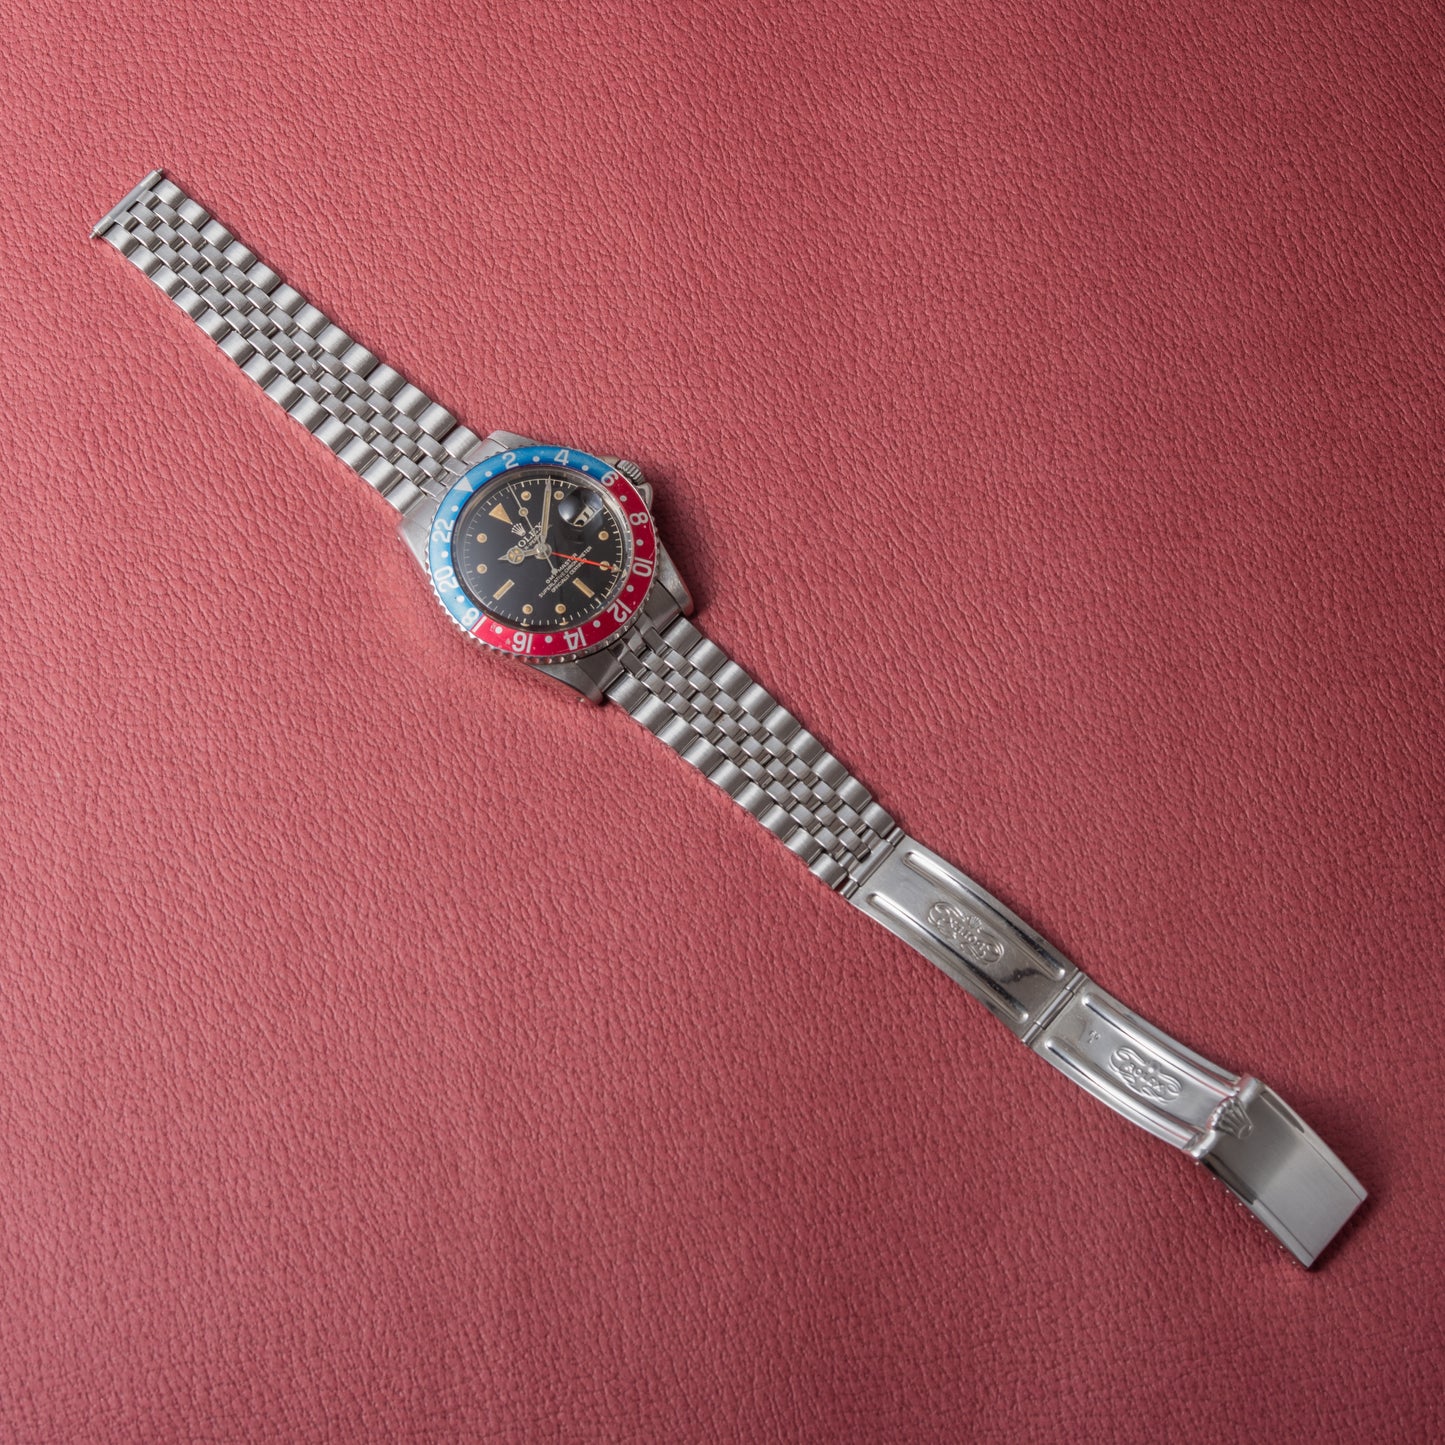 ロレックス GMTマスター ペプシベゼル 1961年製 Ref.1675 サークルミラー 小針